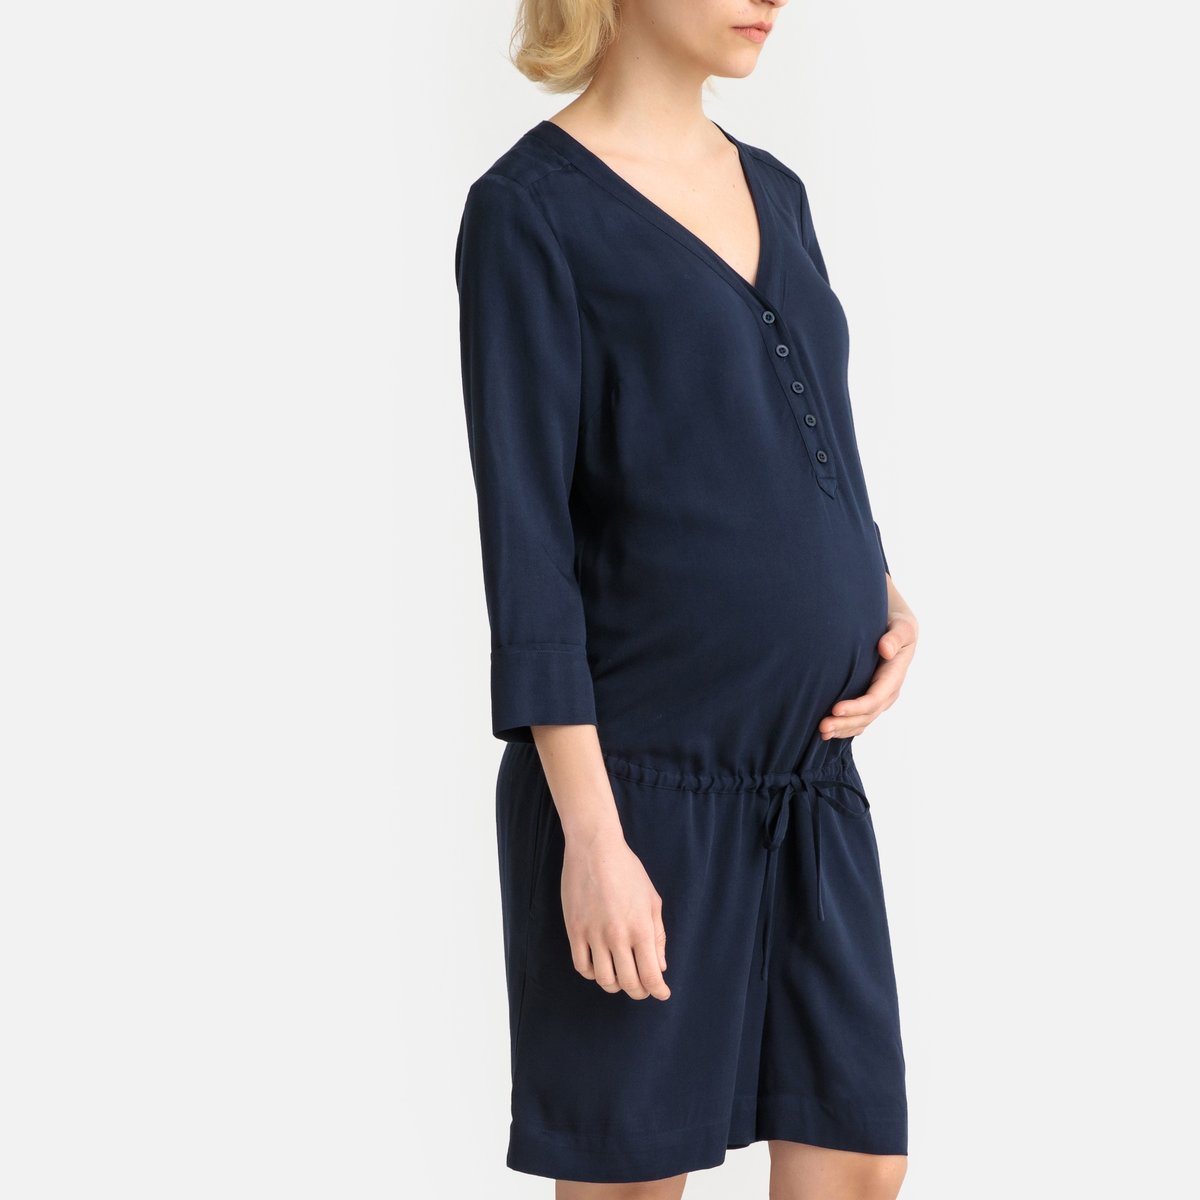 Комбинезон La Redoute С шортами для периода беременности 38 (FR) - 44 (RUS) синий, размер 38 (FR) - 44 (RUS)